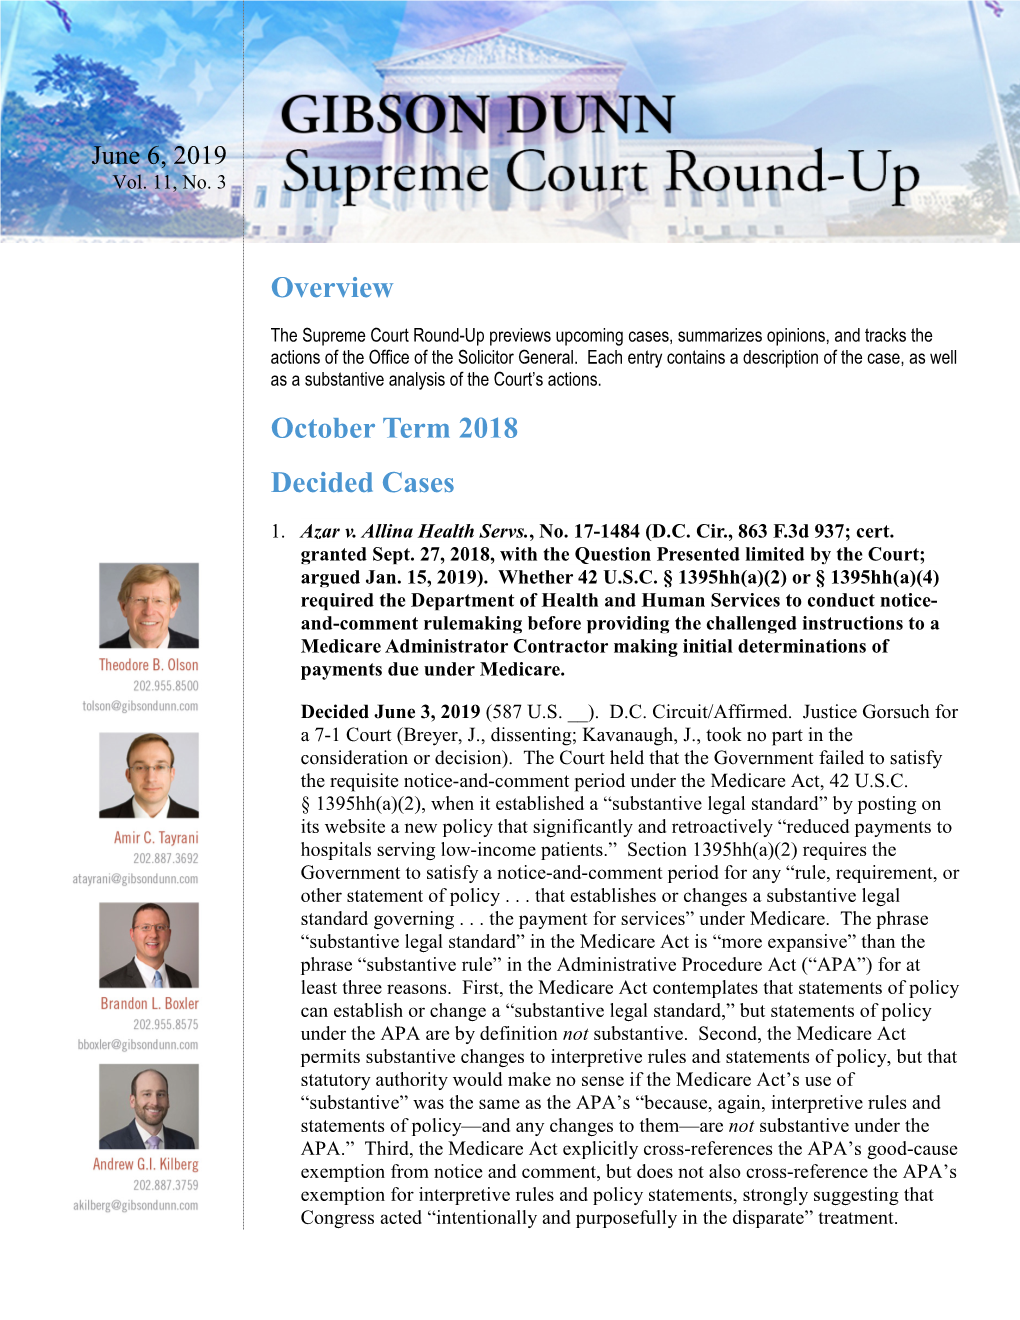 Supreme Court Round-Up (June 2019)